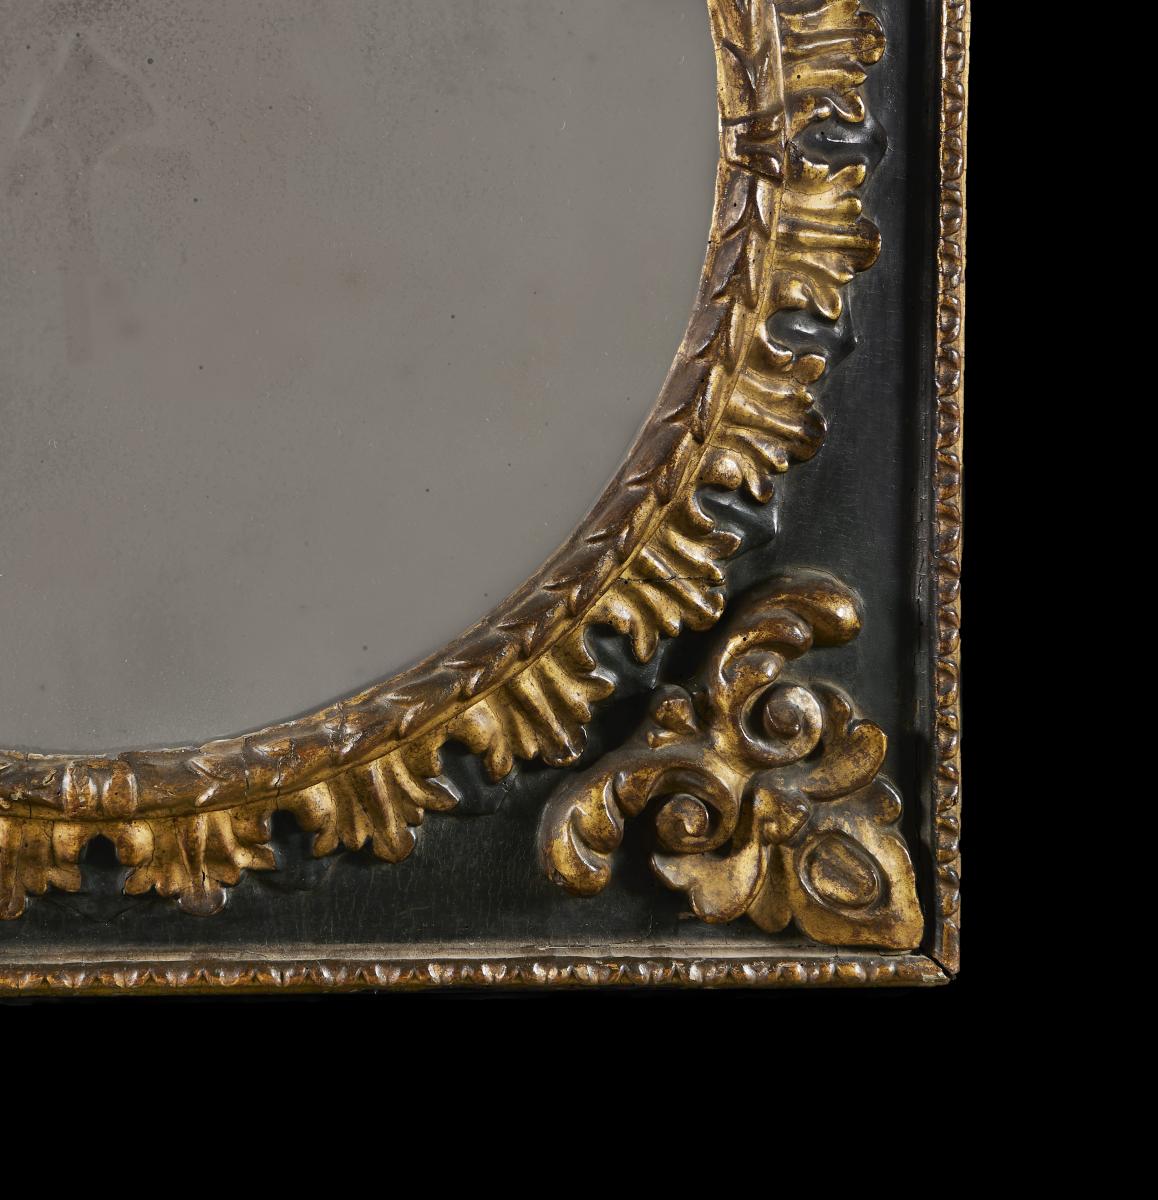 Rare 18th Century Florentine Mirror